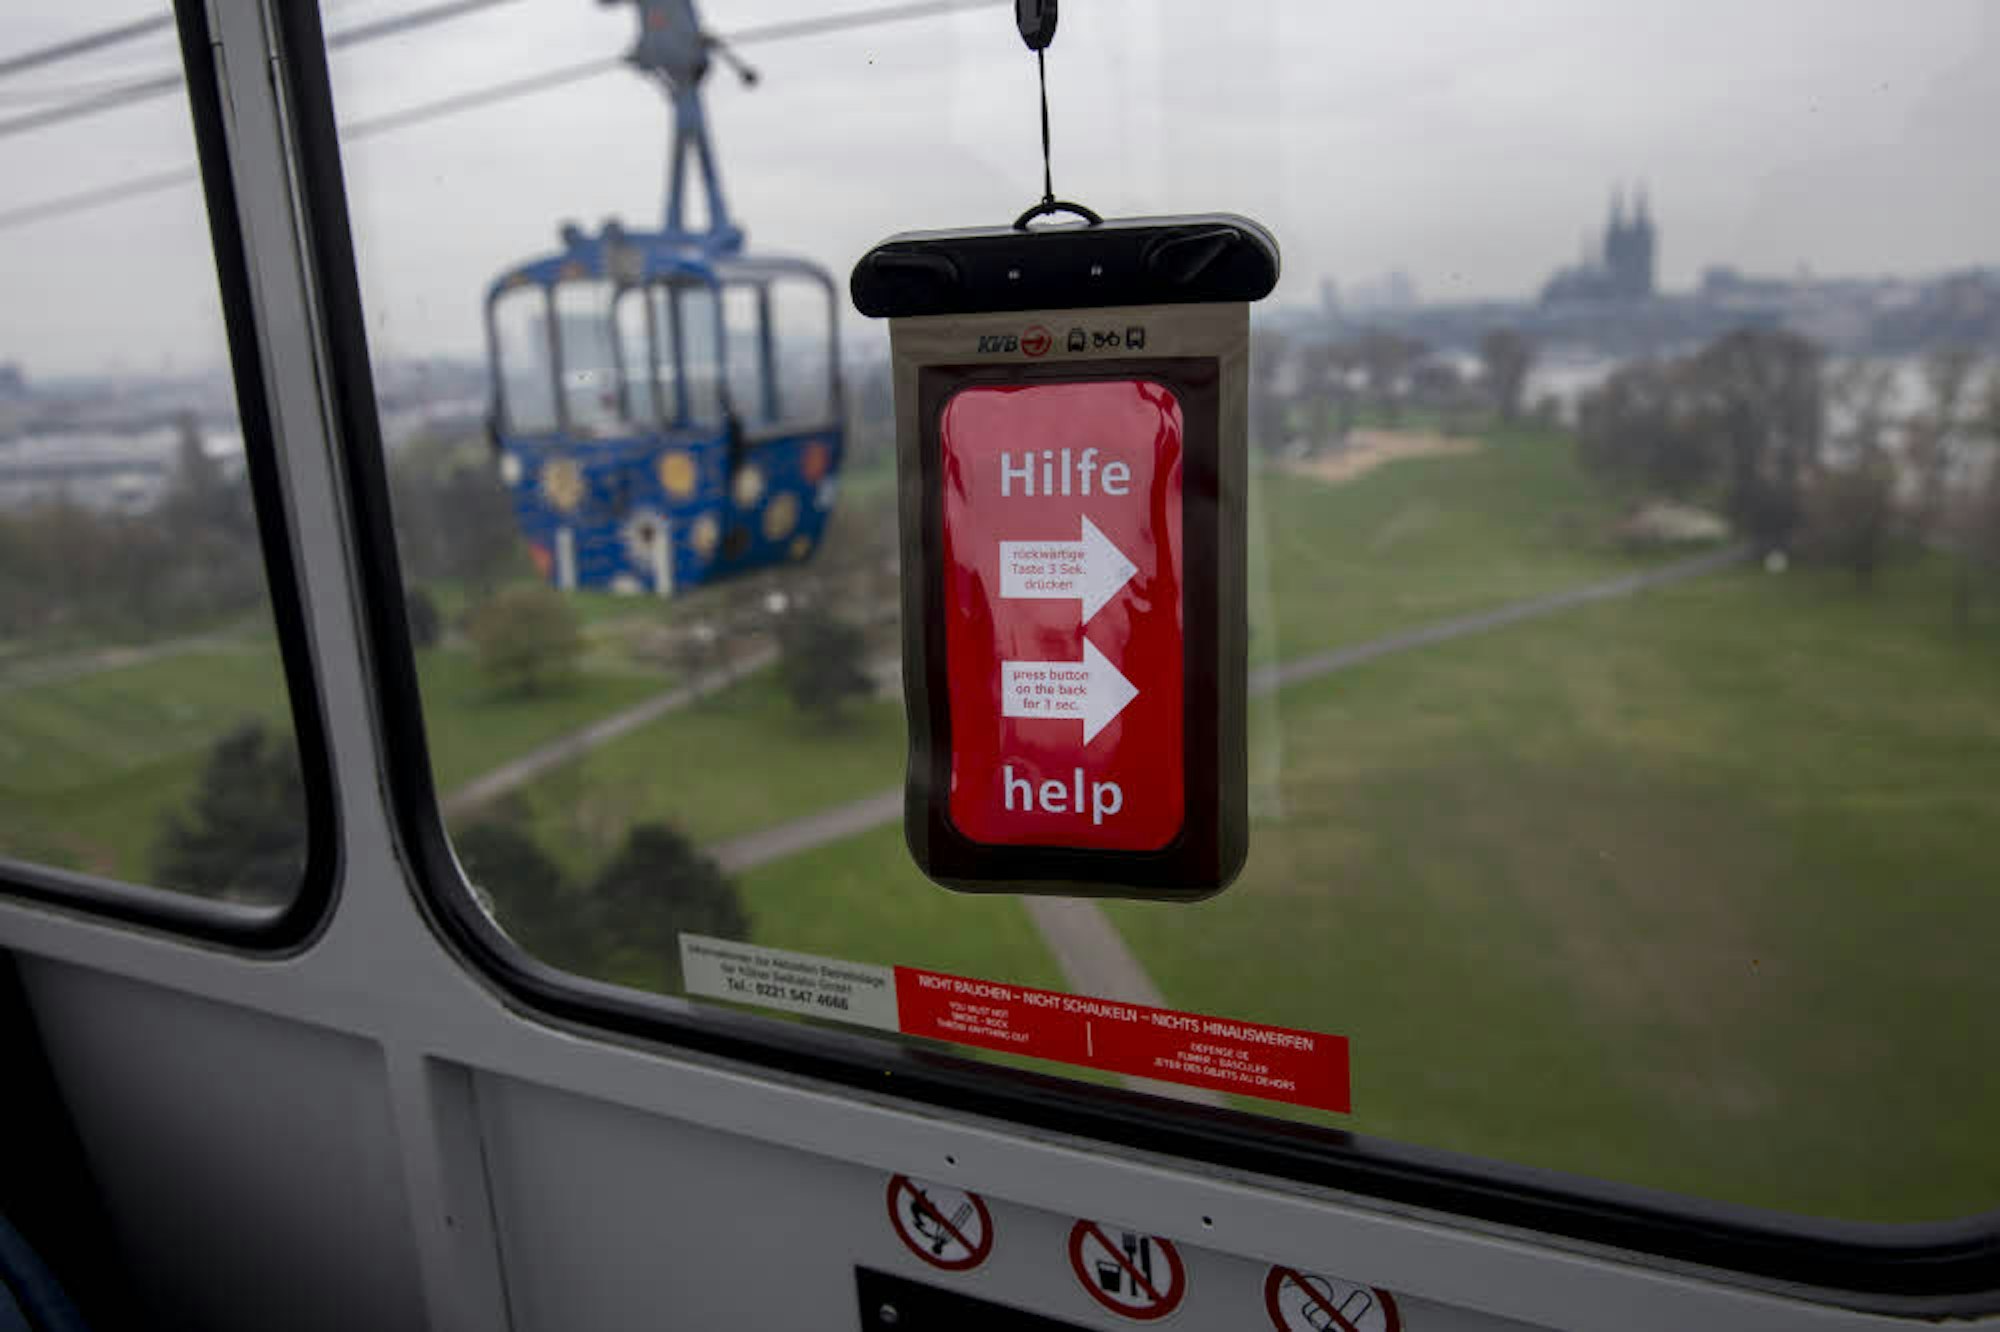 In den Gondeln hängen rote Notfalltelefone in Beuteln, mit denen Fahrgäste Kontakt zur Leitstelle aufnehmen können.